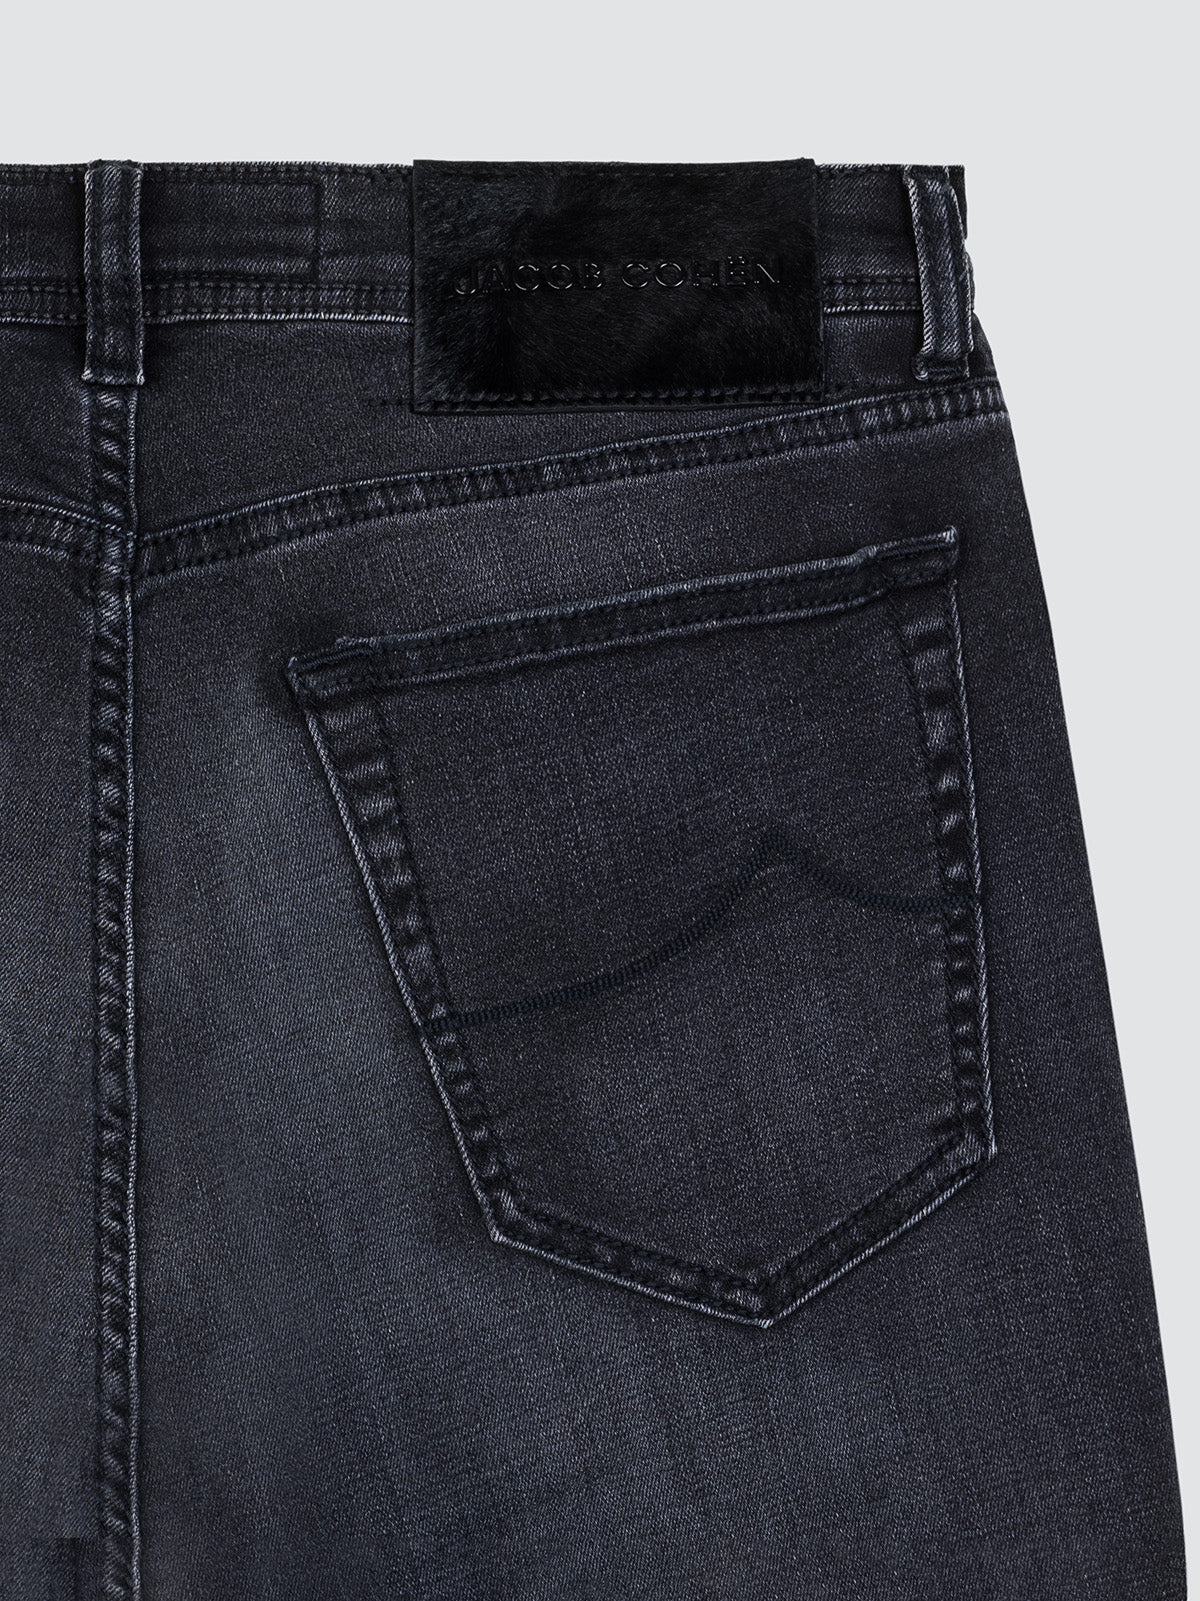 jacob cohen jeans nick slim fit gris foncé patch noir